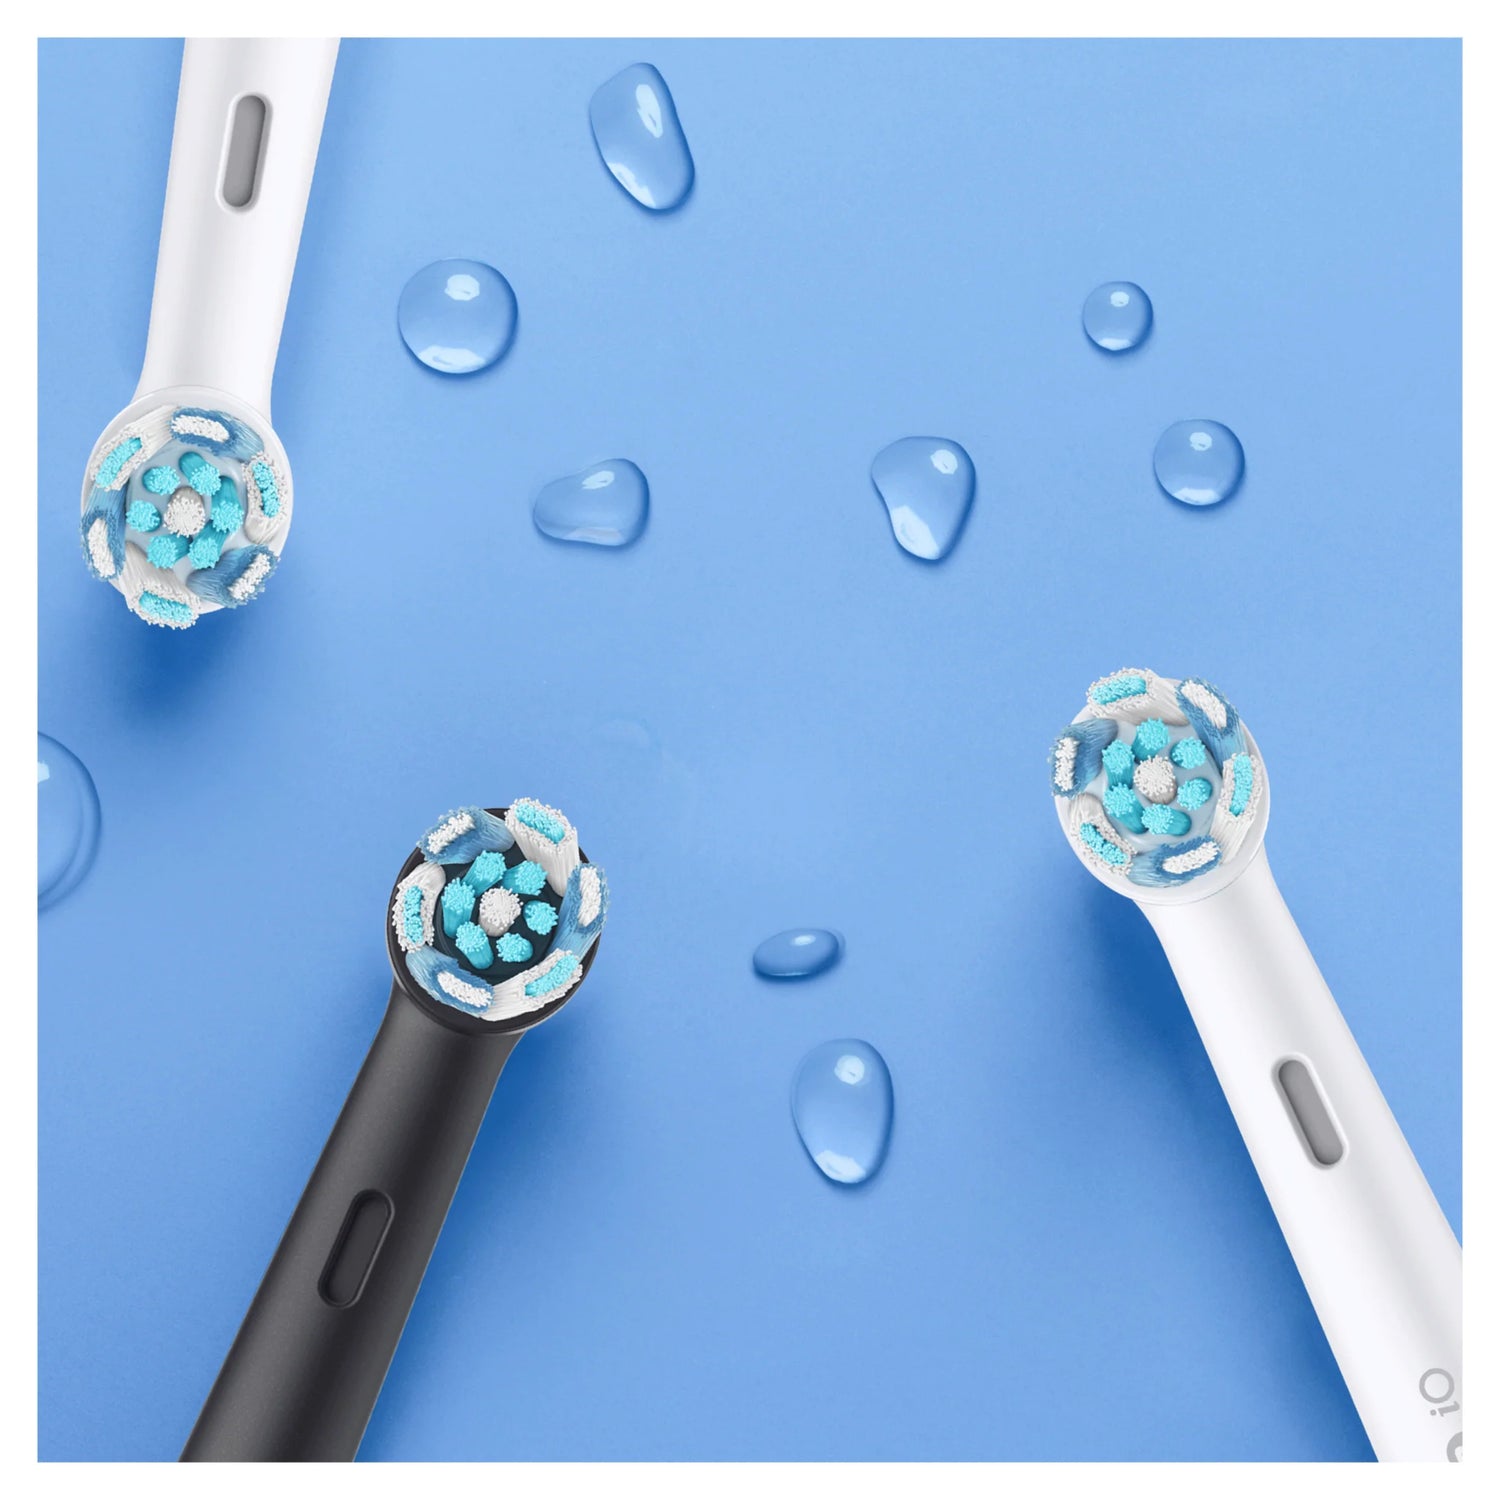 opzetstukjes en opzetborstels voor de elektrische tandenborstel